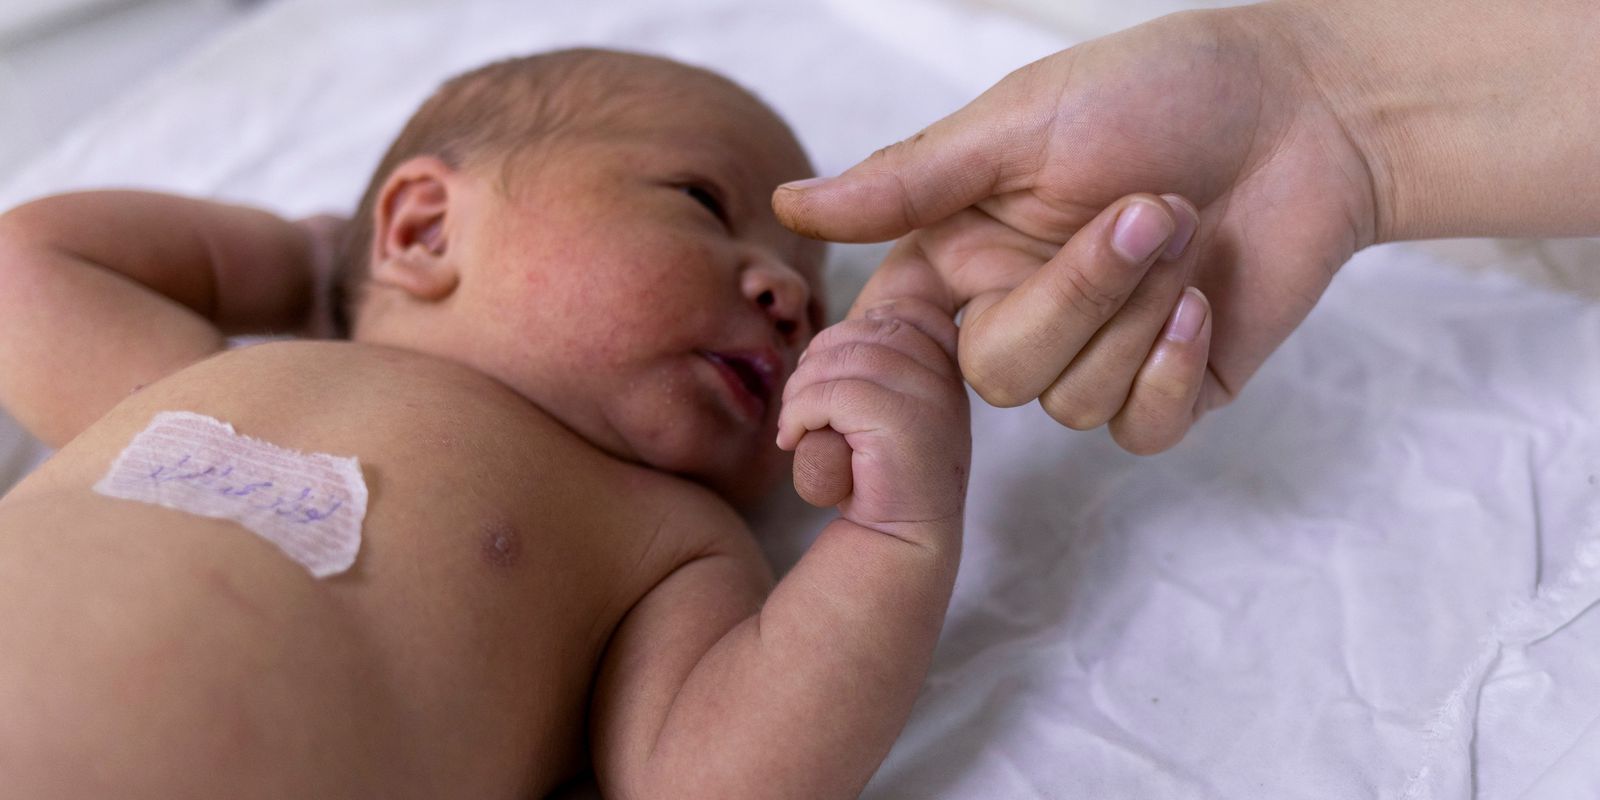 Detran opens new identification post for newborns in Rio